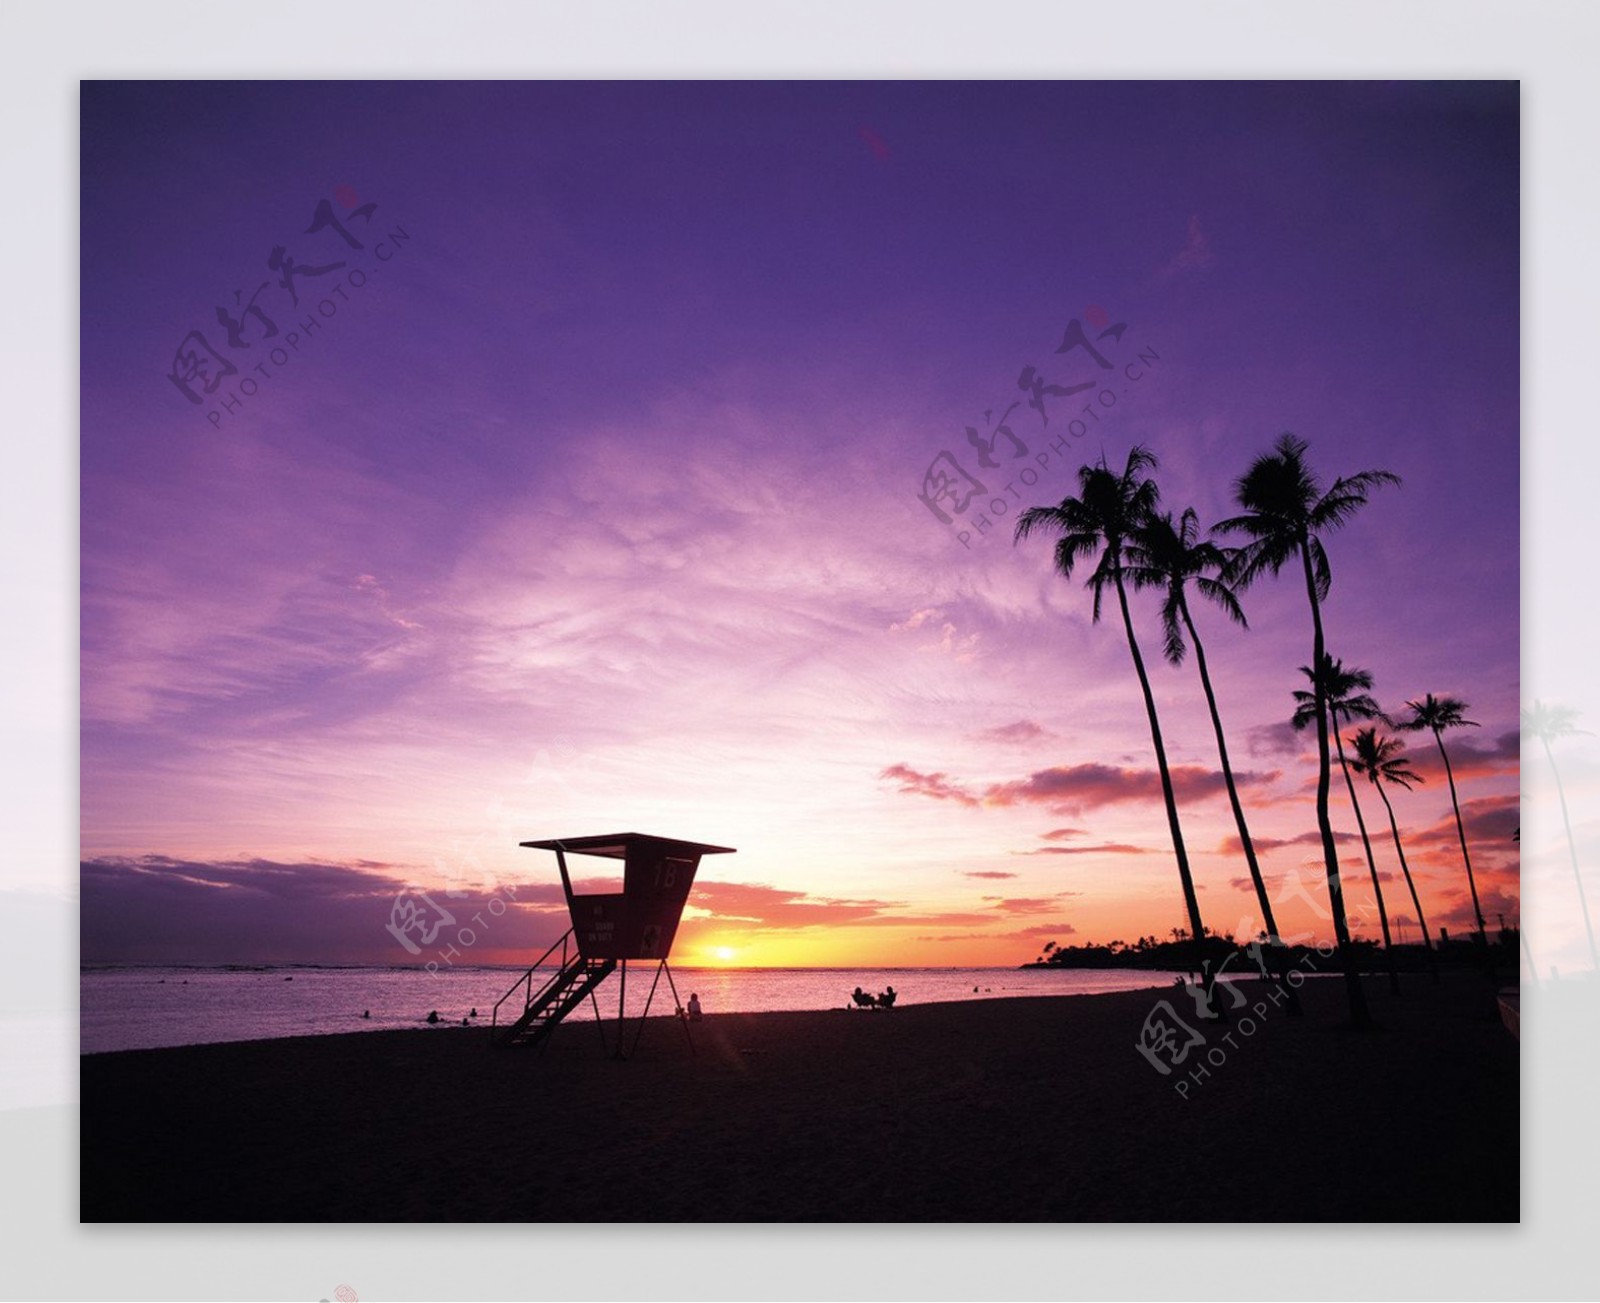 夏威夷夜景图片